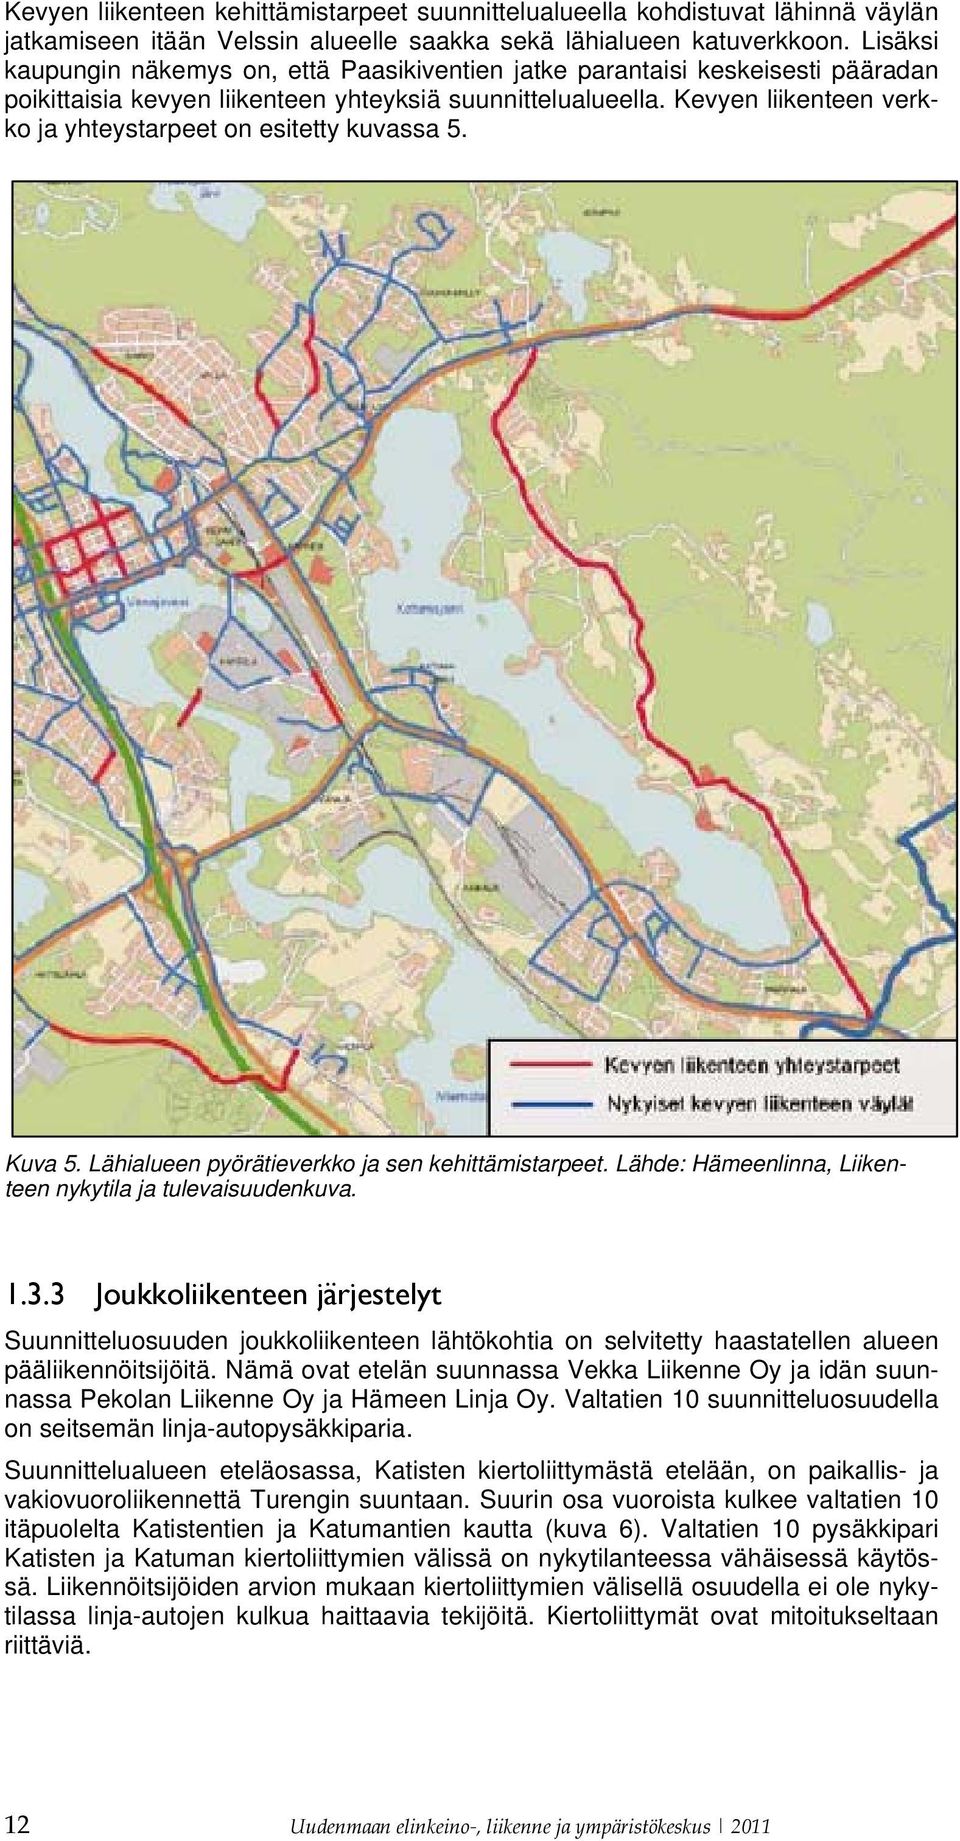 Kevyen liikenteen verkko ja yhteystarpeet on esitetty kuvassa 5. Kuva 5. Lähialueen pyörätieverkko ja sen kehittämistarpeet. Lähde: Hämeenlinna, Liikenteen nykytila ja tulevaisuudenkuva. 1.3.